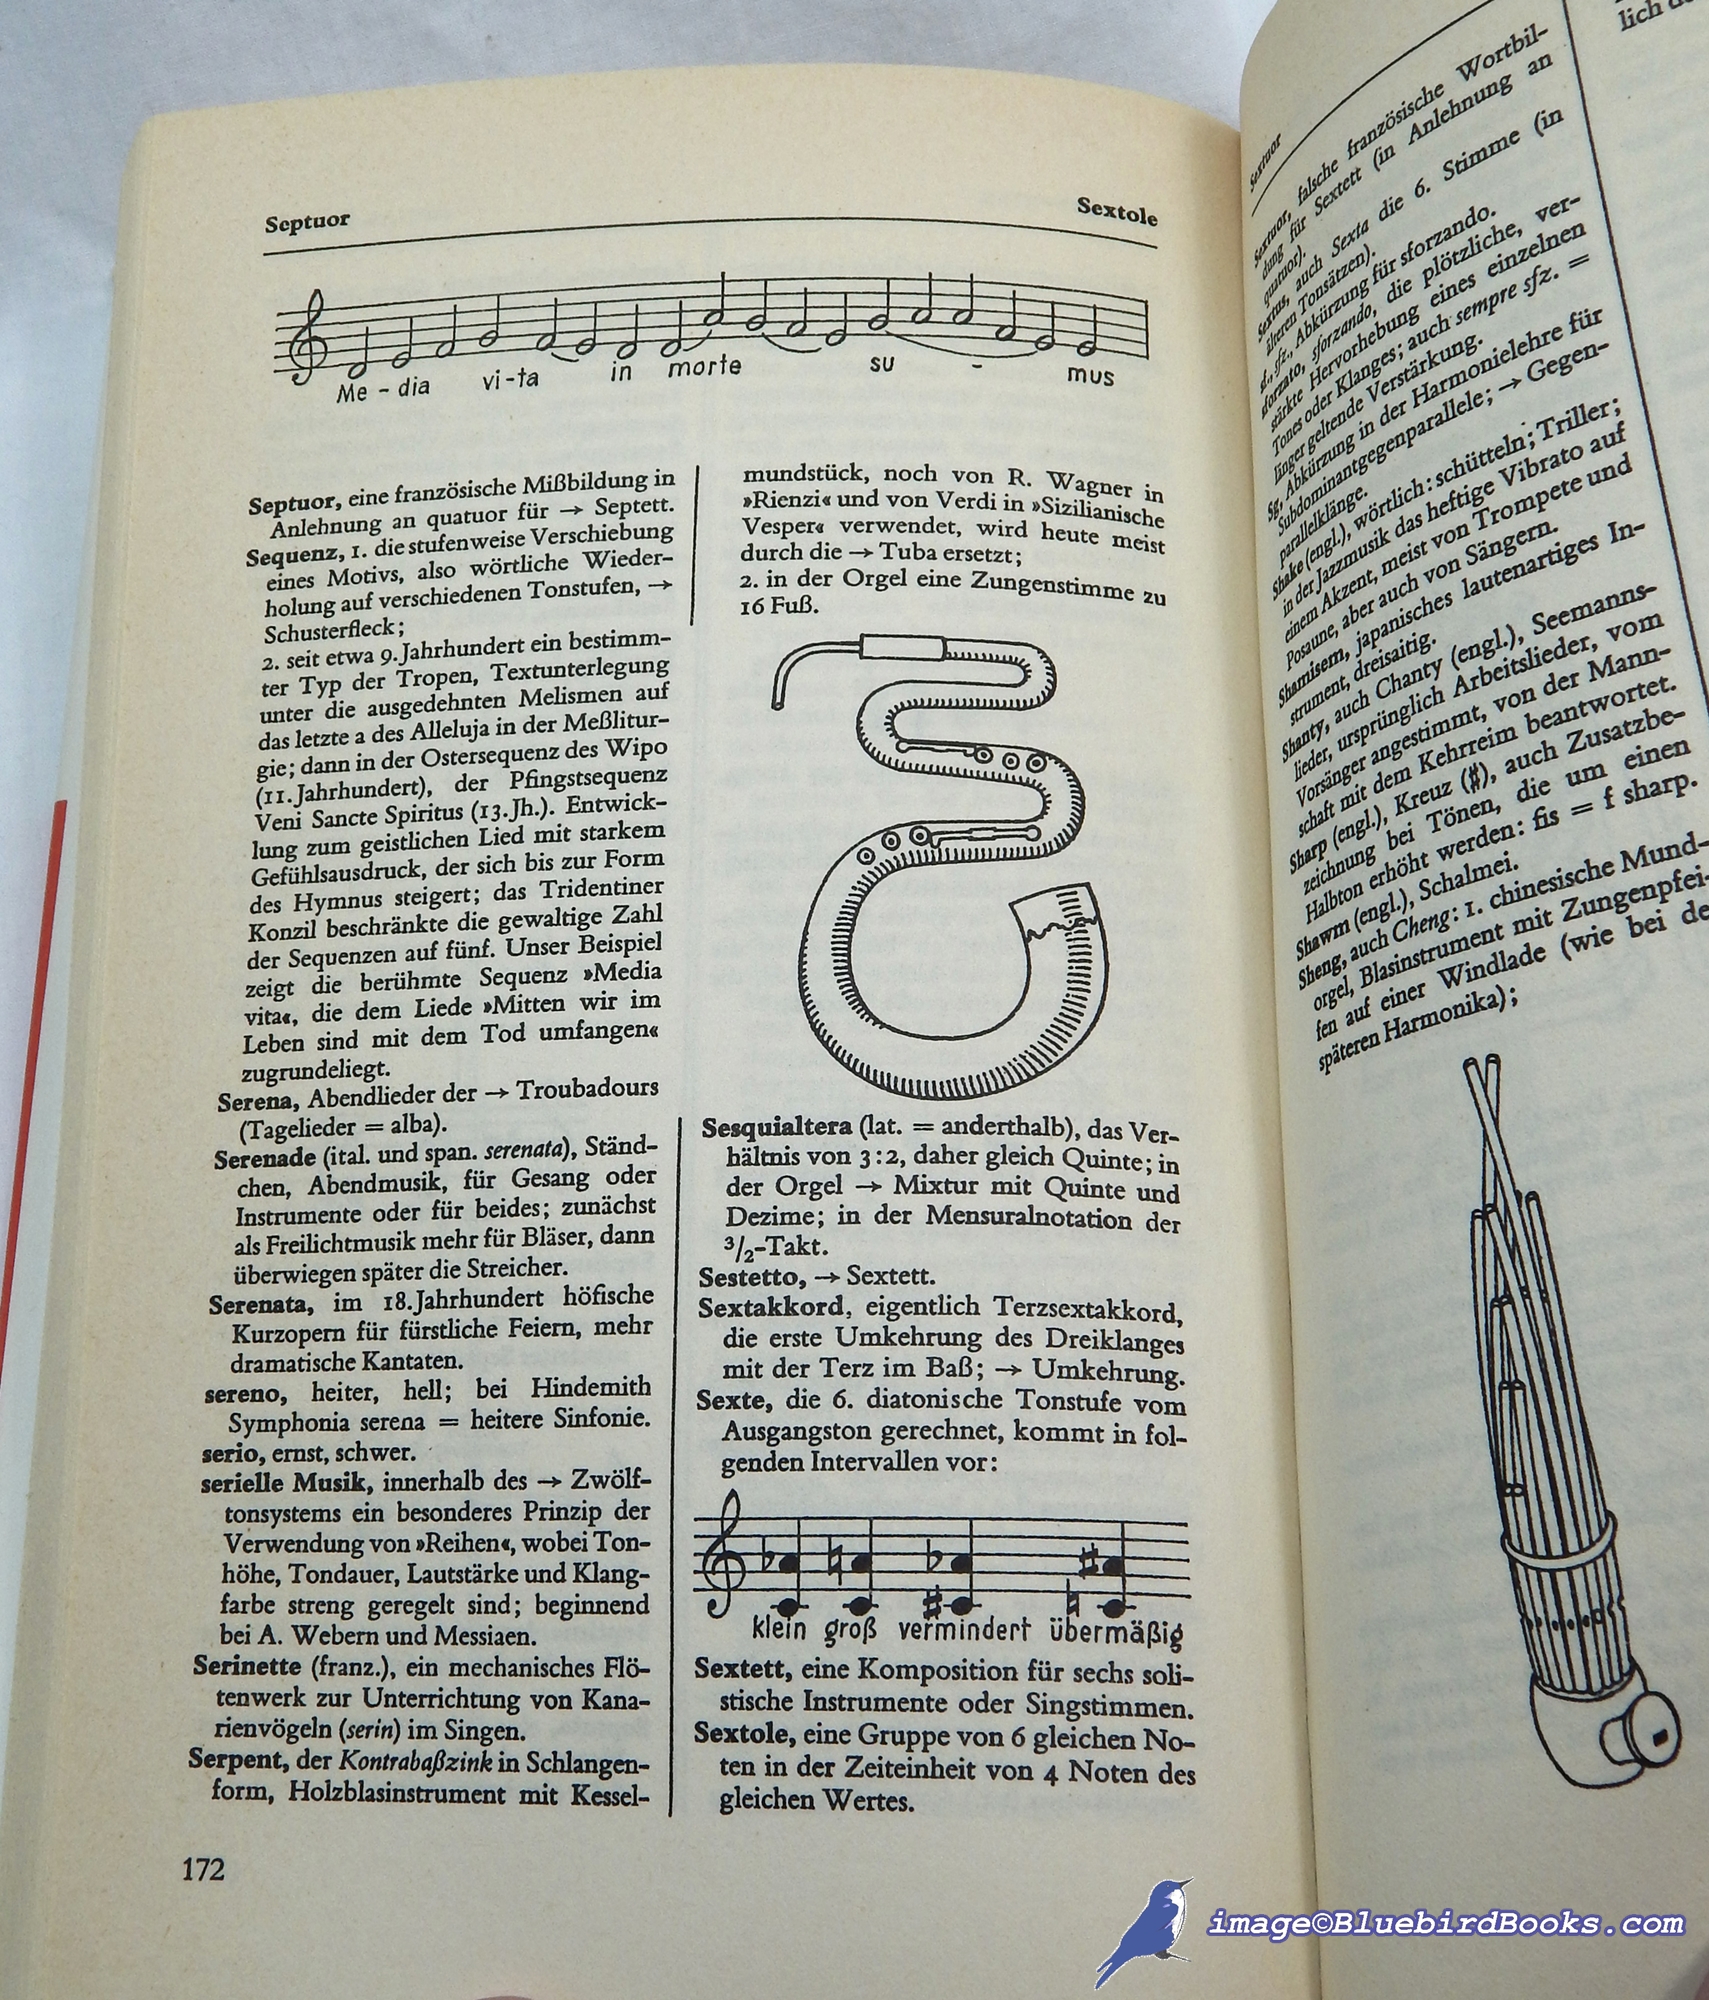 GERICK, HERBERT - Fachwrterbuch Der Musik: 5000 Stichworte, 220 Notenbeispiele, 250 Illustrationen [German-Language Musical Dictionary]